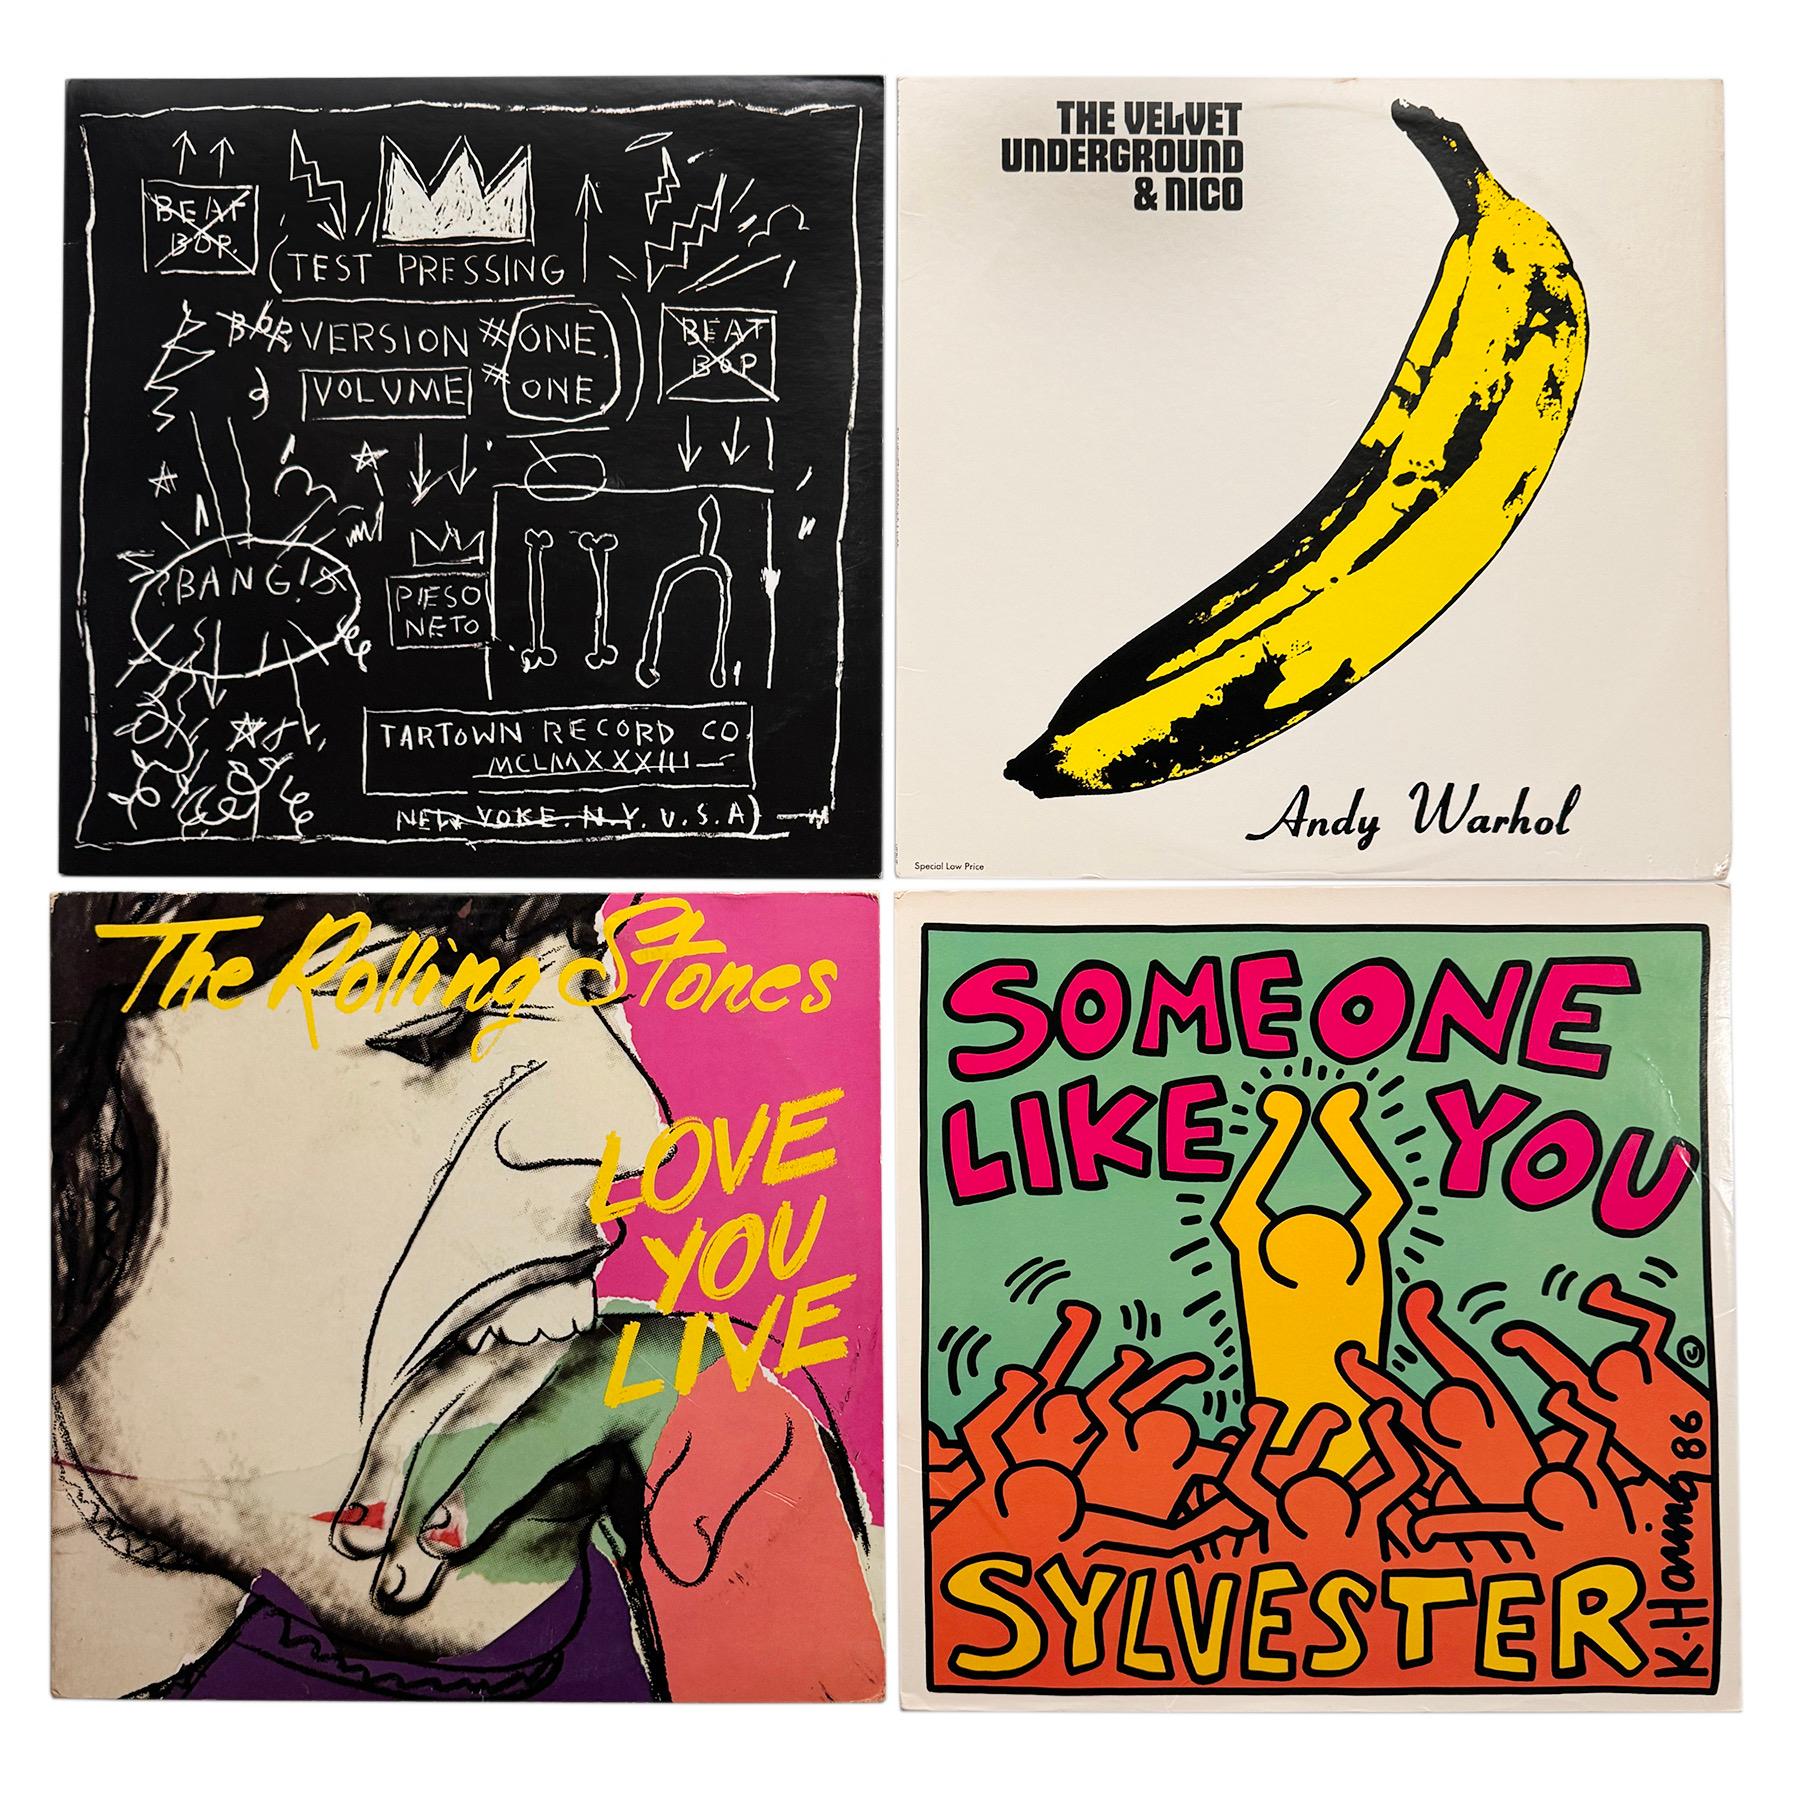 Couvertures de disques conçues par Basquiat Haring et Warhol